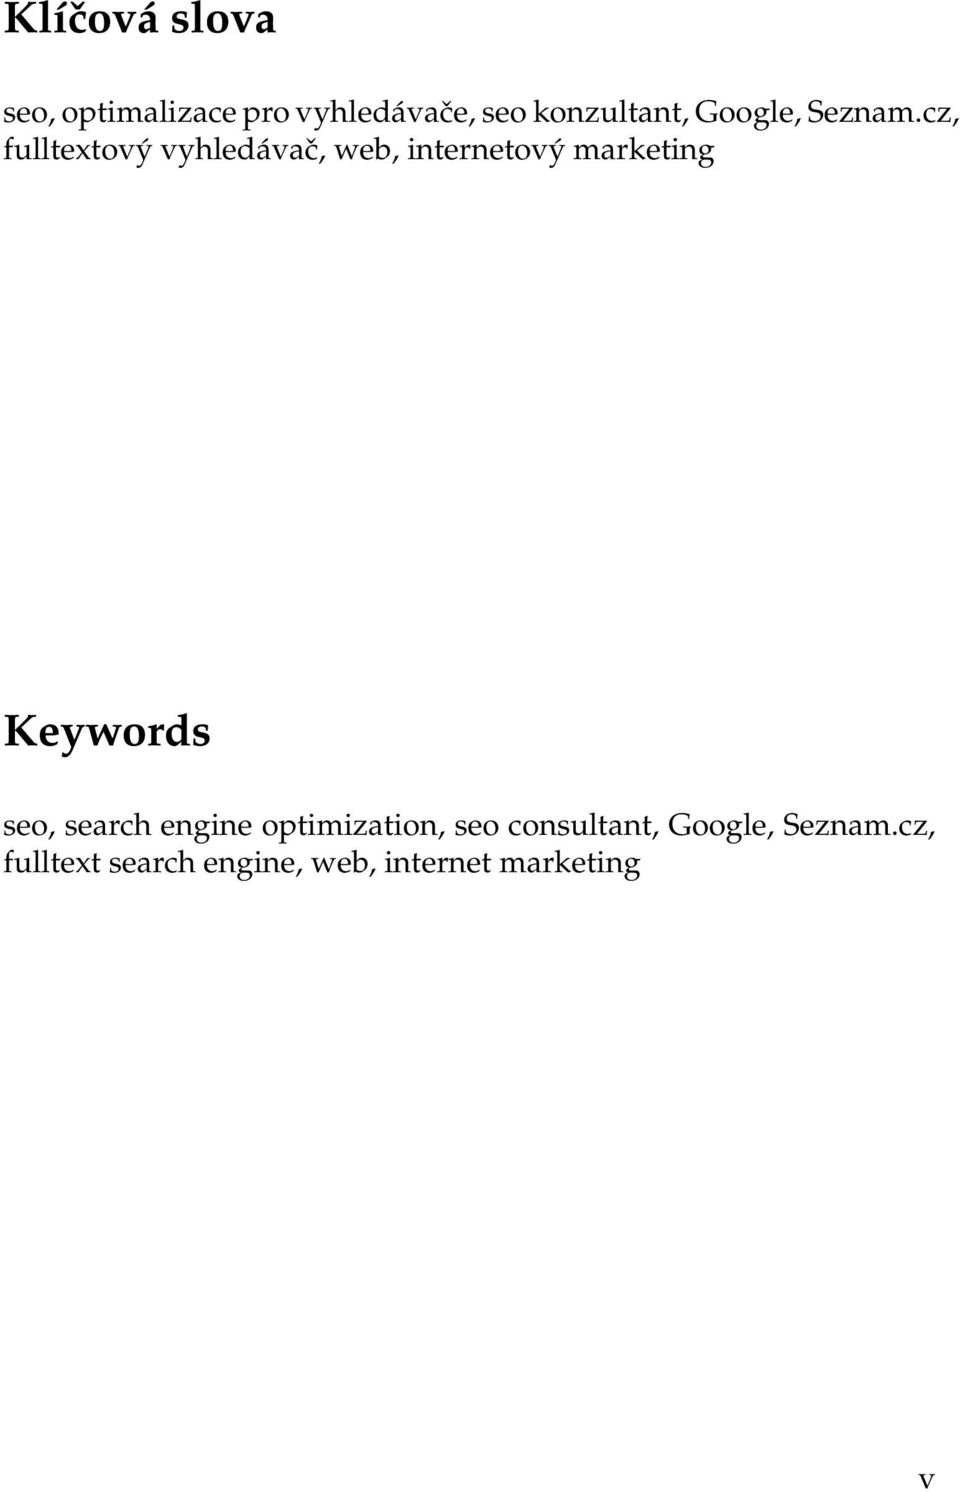 cz, fulltextový vyhledávač, web, internetový marketing Keywords